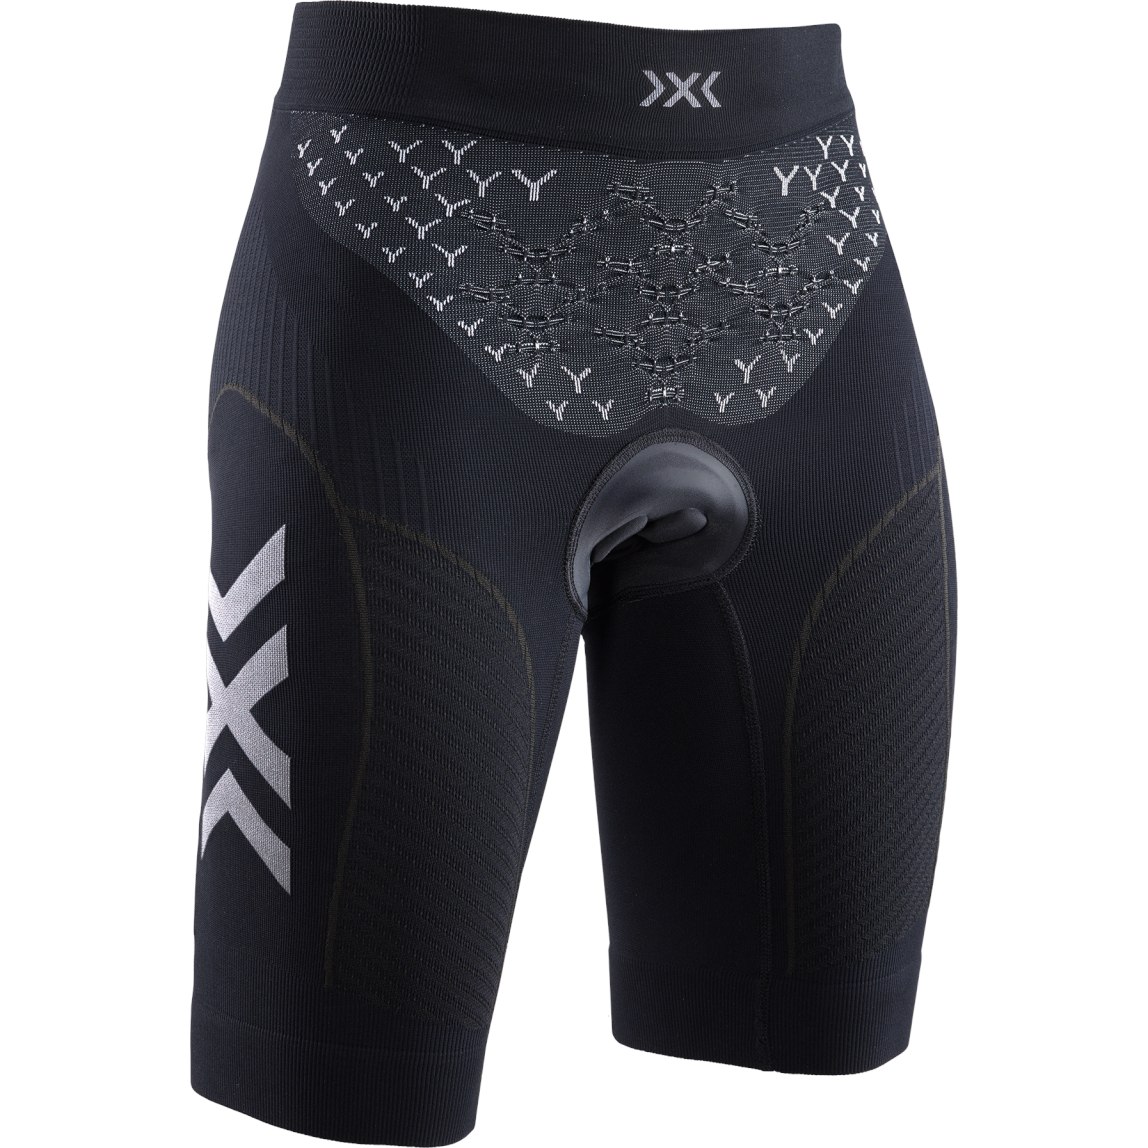 Produktbild von X-Bionic TWYCE G2 4.0 Bike Shorts Padded Radhose für Damen - opal black/arctic white